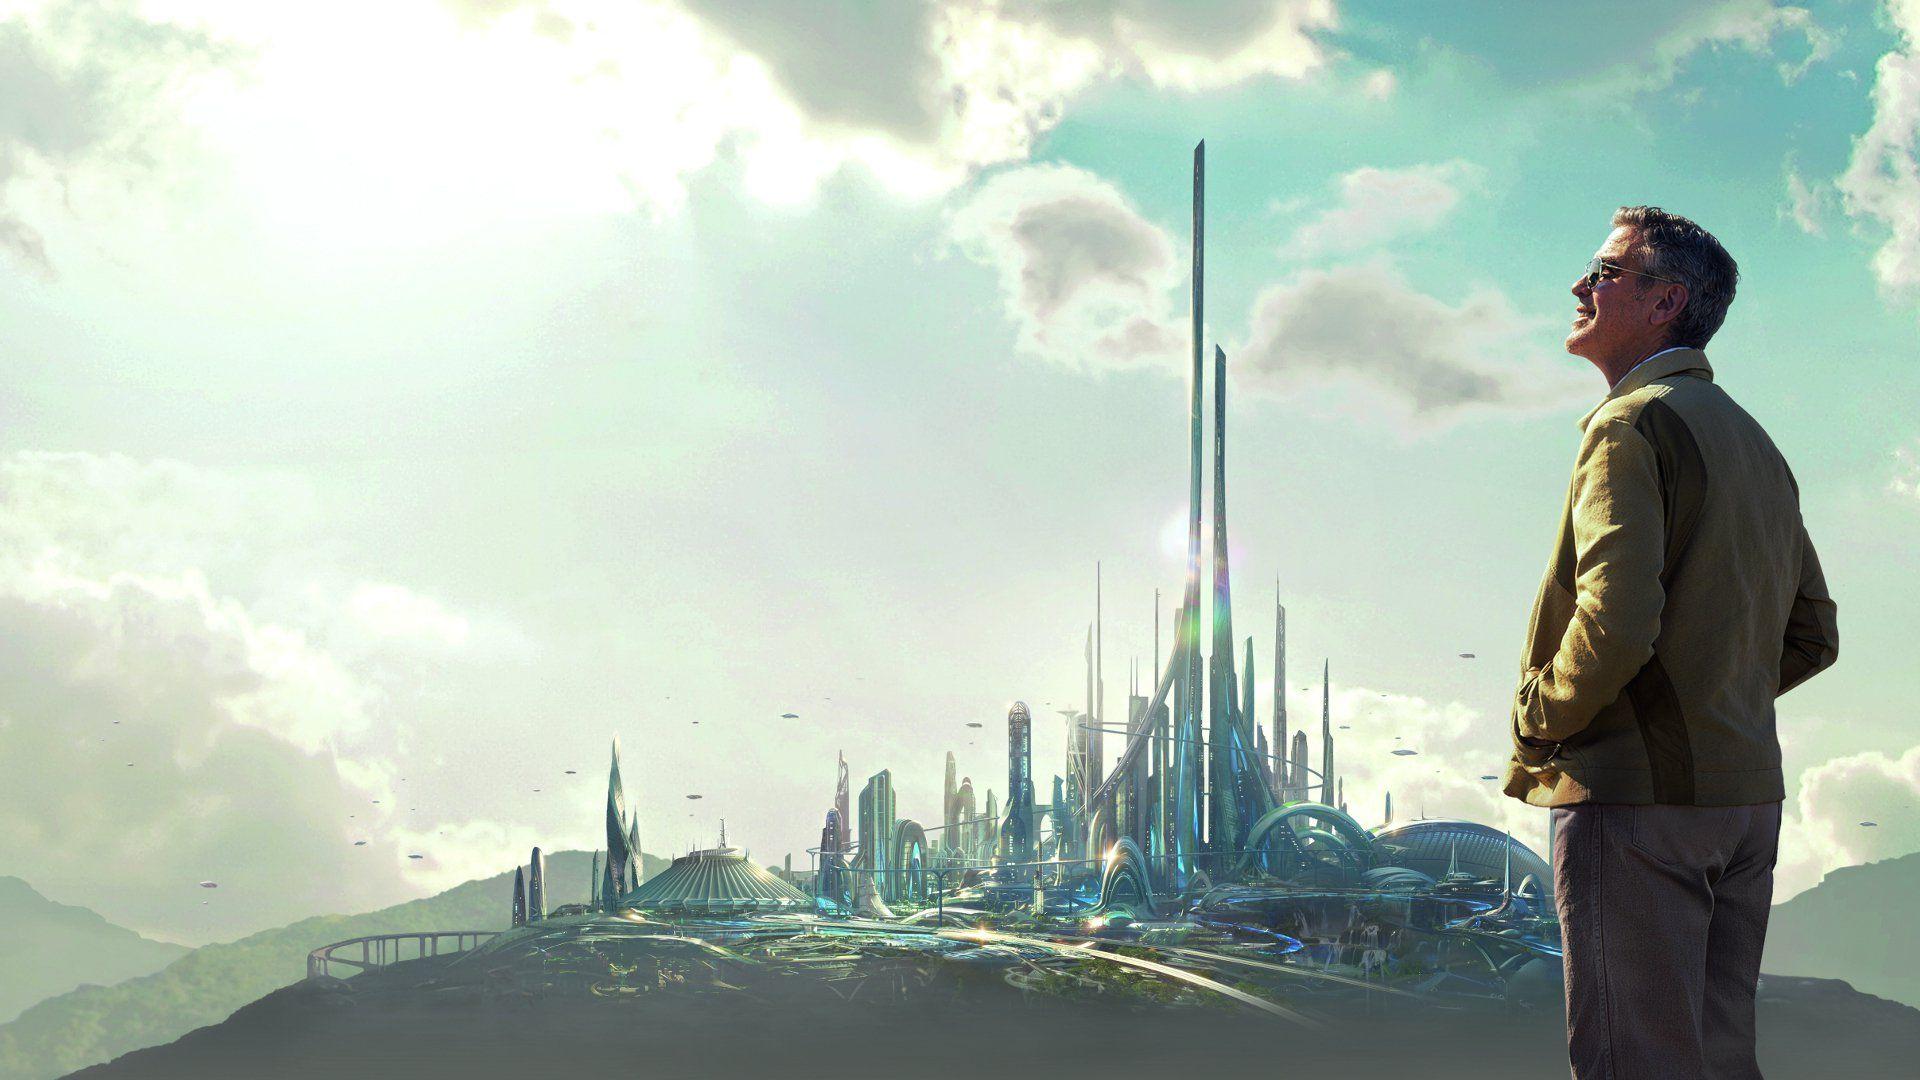 Незабываемое будущее. Земля будущего Tomorrowland, 2015 (12+). Джордж Клуни земля будущего. Нейт Ньютон земля будущего.